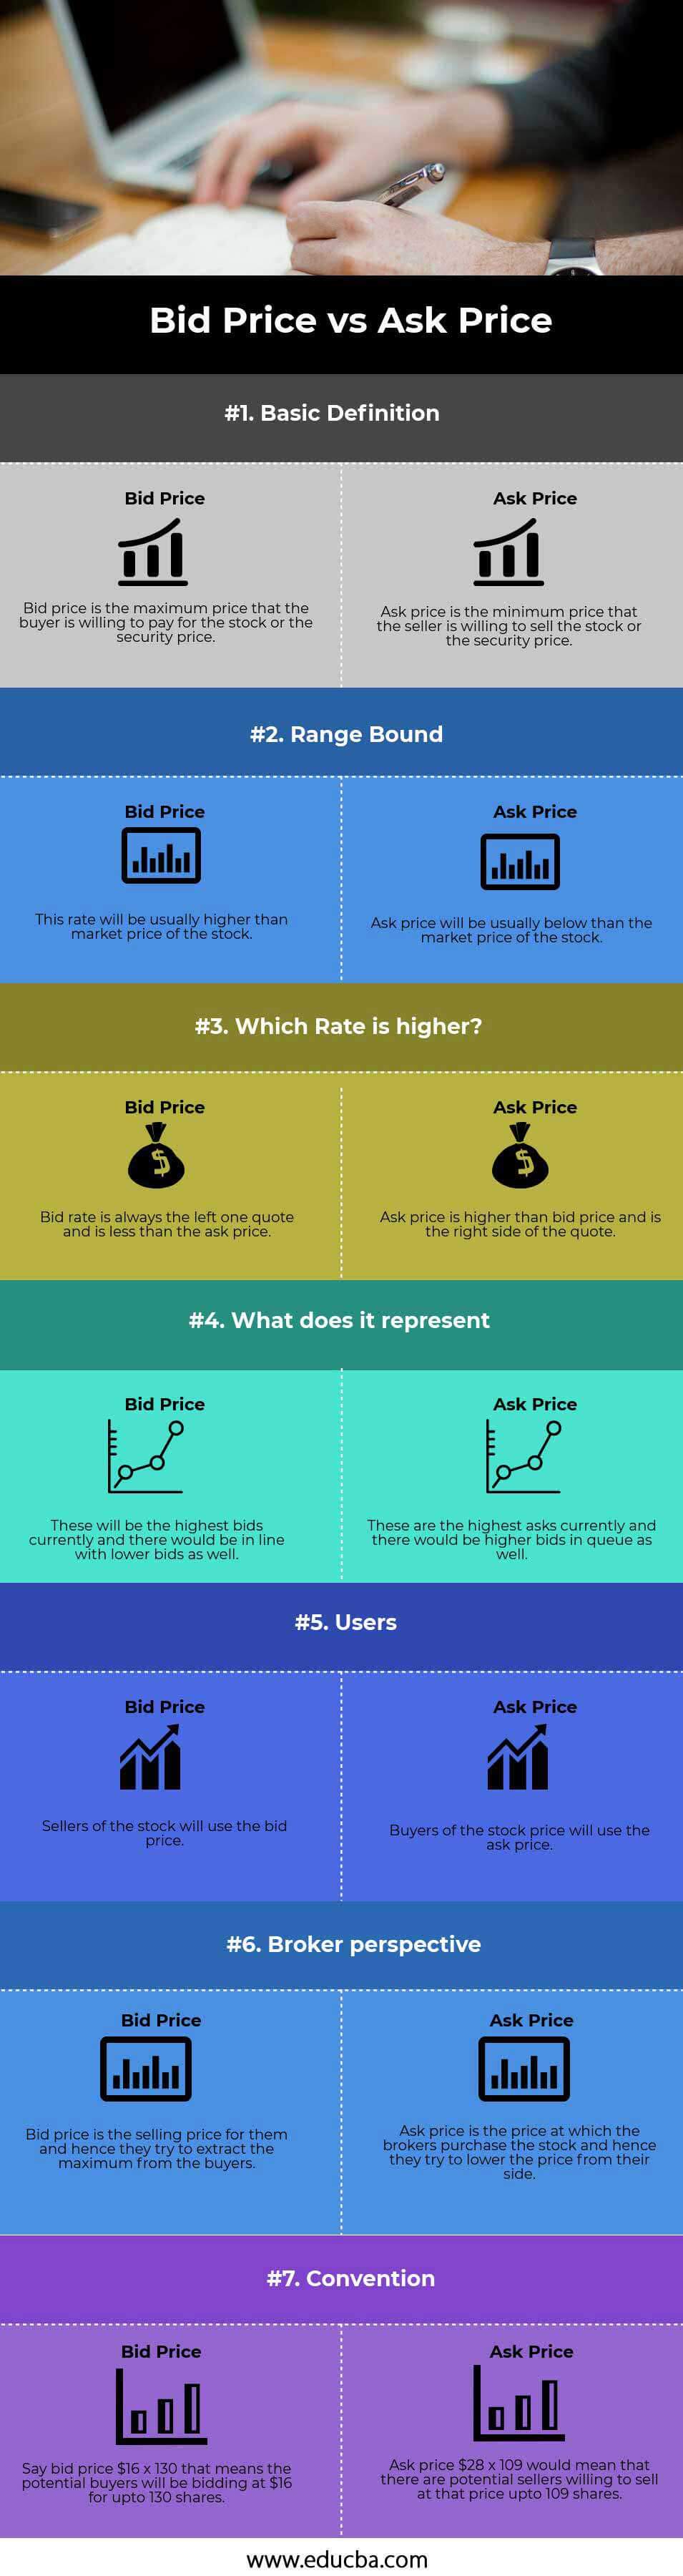 Bid-Price-vs-Ask-Price-info